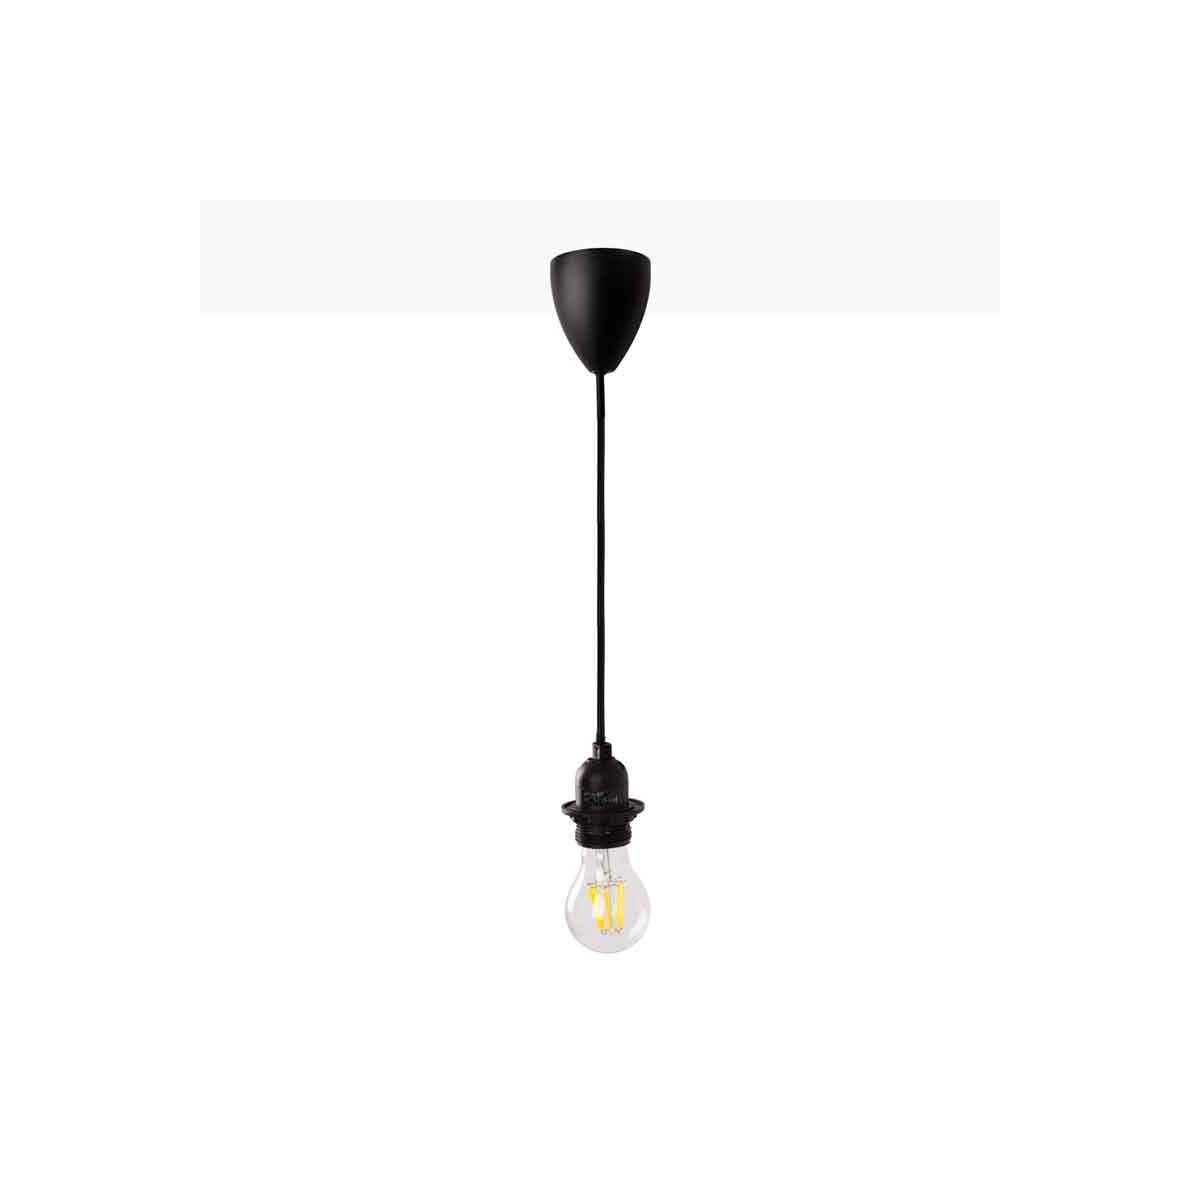 Lampada a sospensione per lampadina E27 150cm